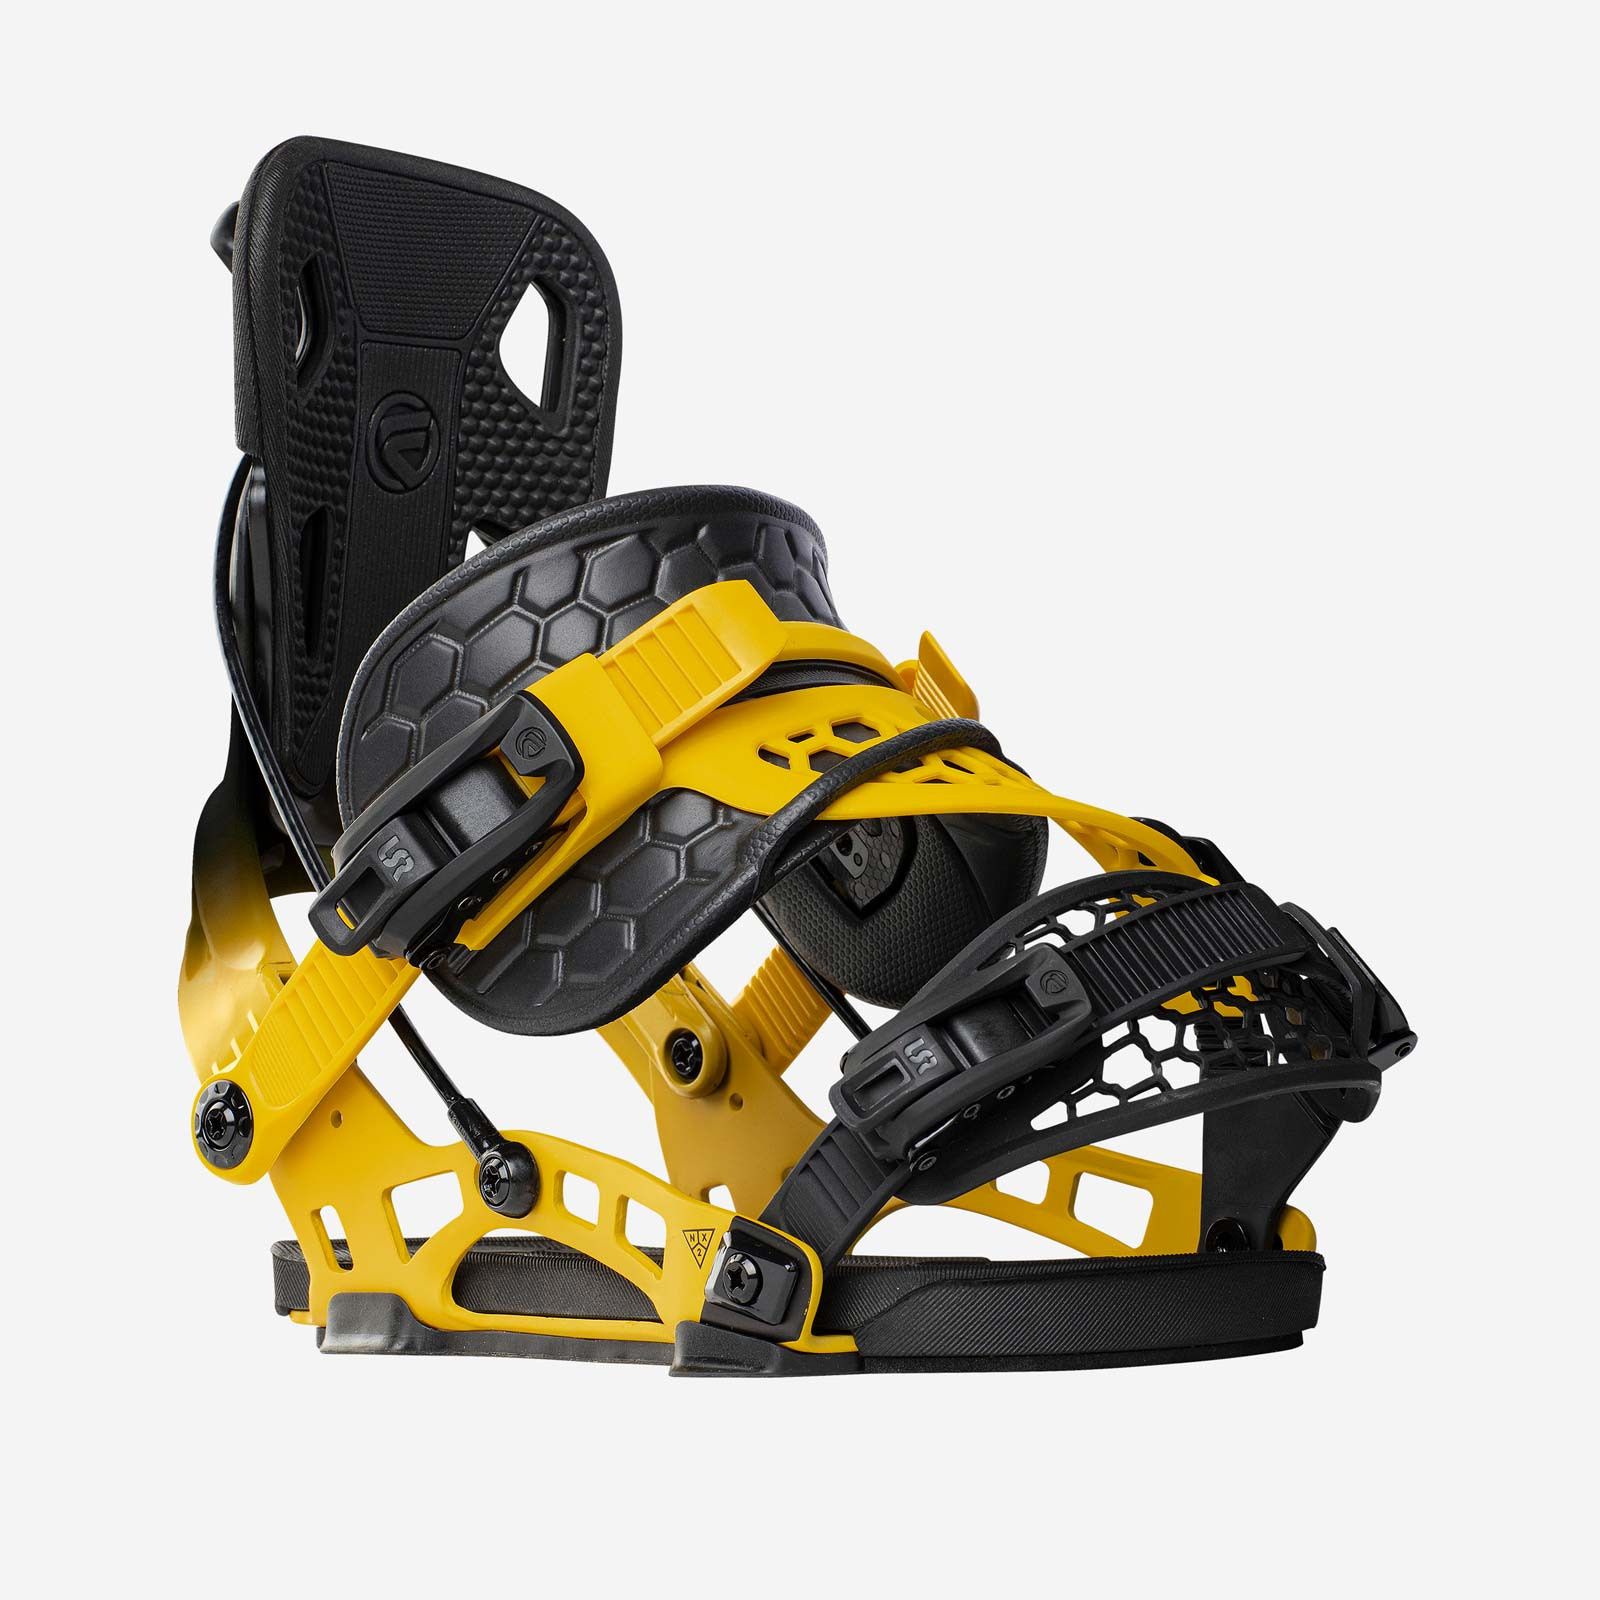 Scheur Zegevieren Nodig uit Flow NX2 Hybrid snowboardbinding 2023 online kopen?